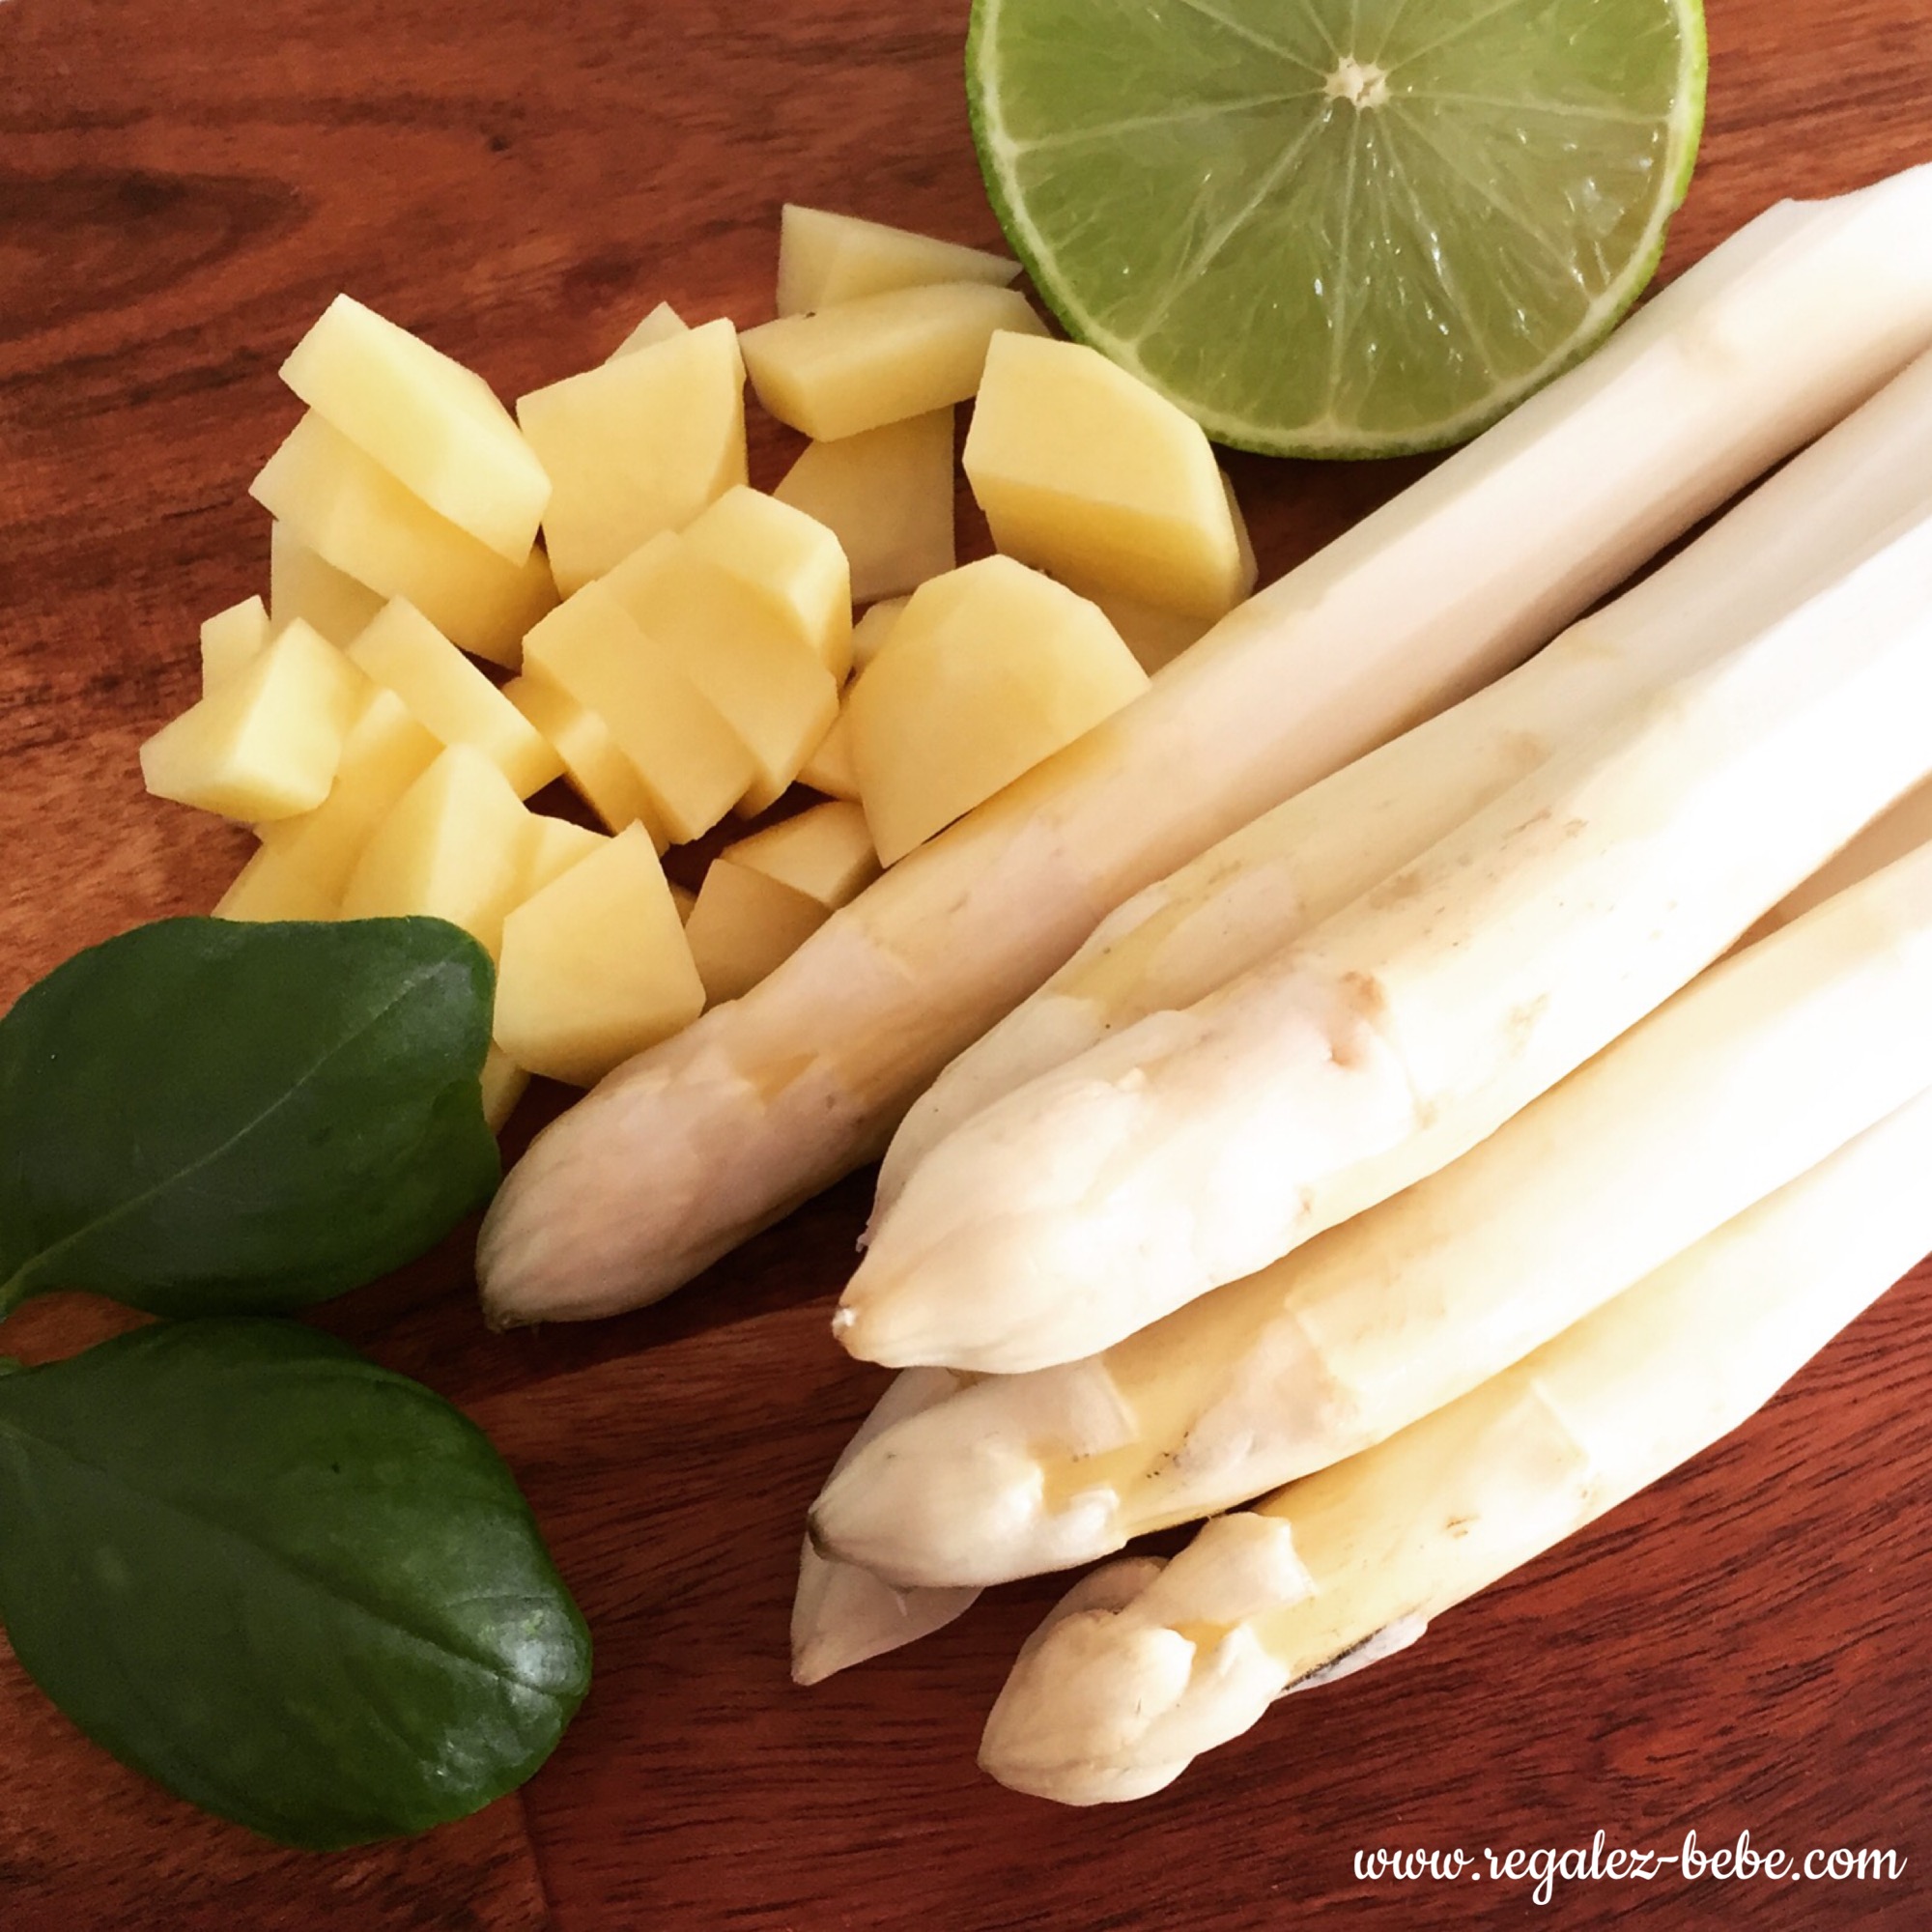 Purée d'asperges blanches au citron vert et basilic